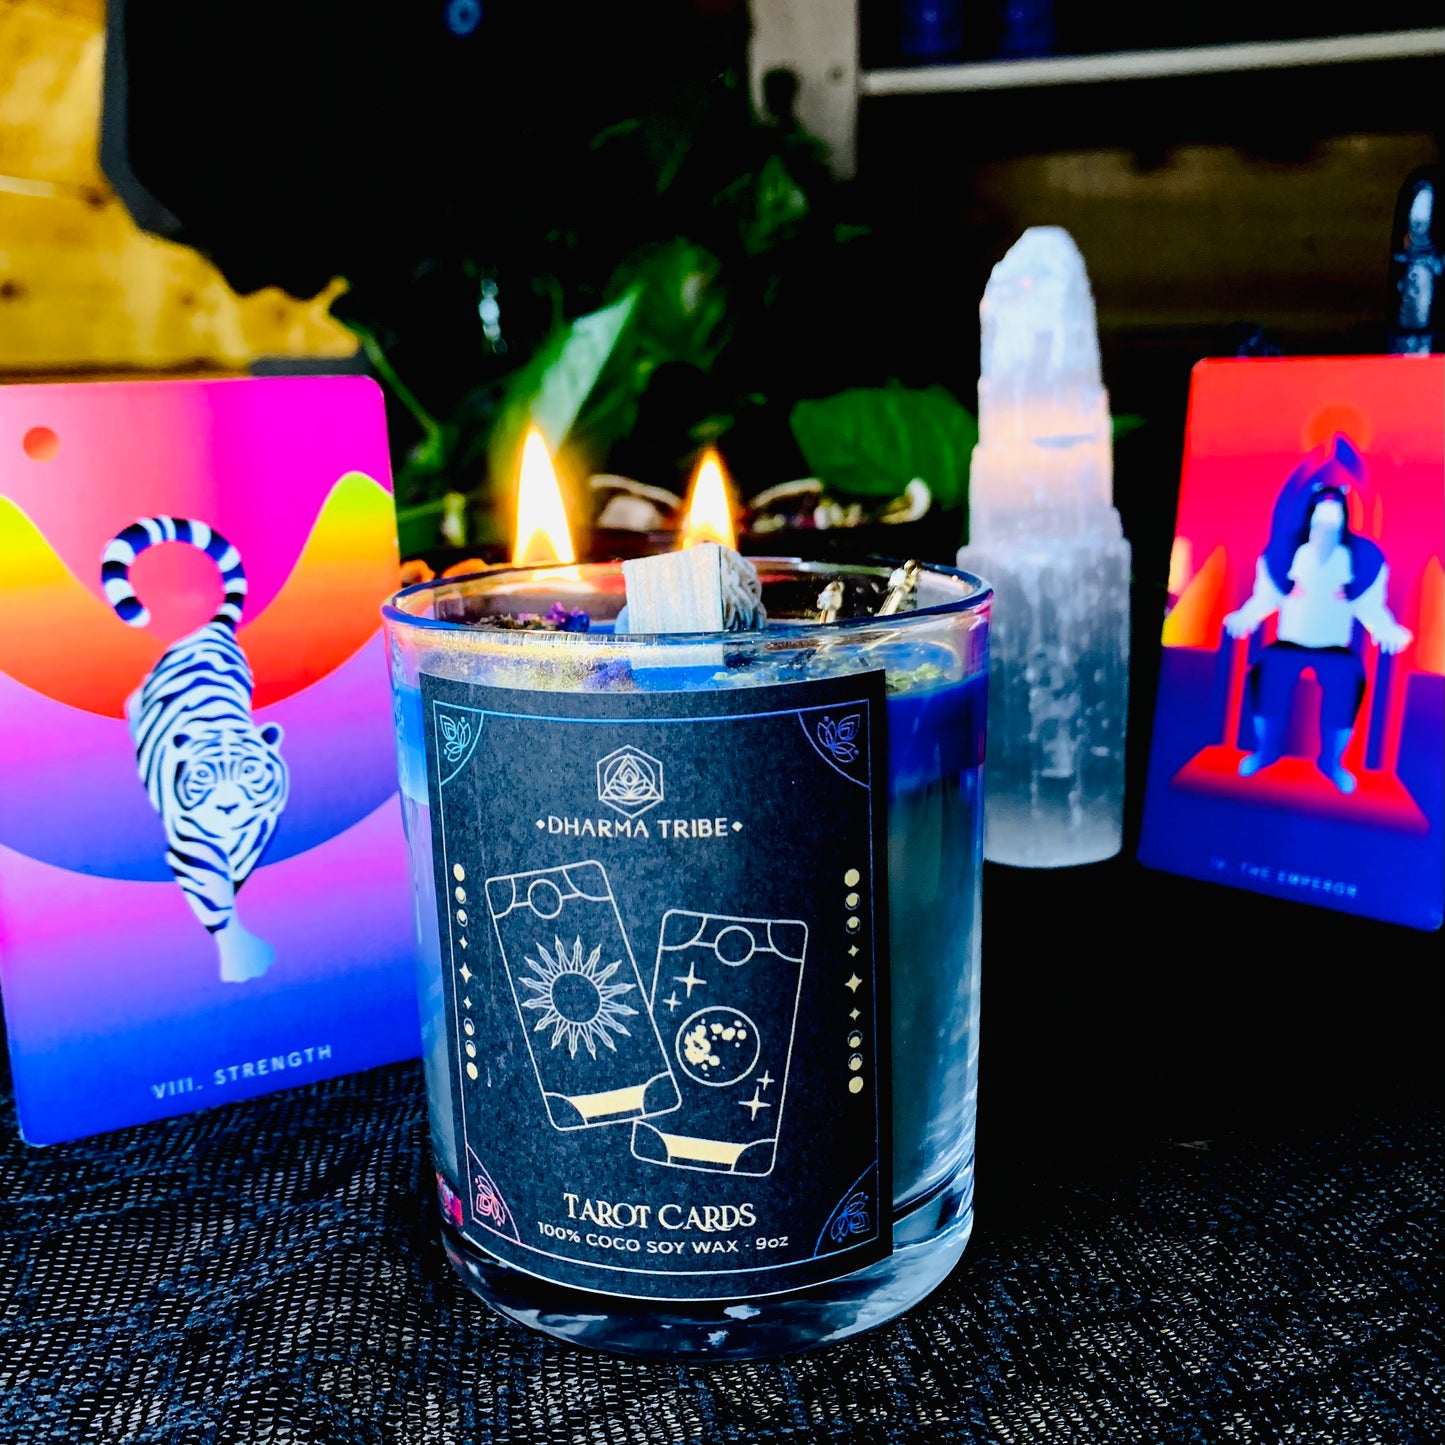 Tarot cards candle